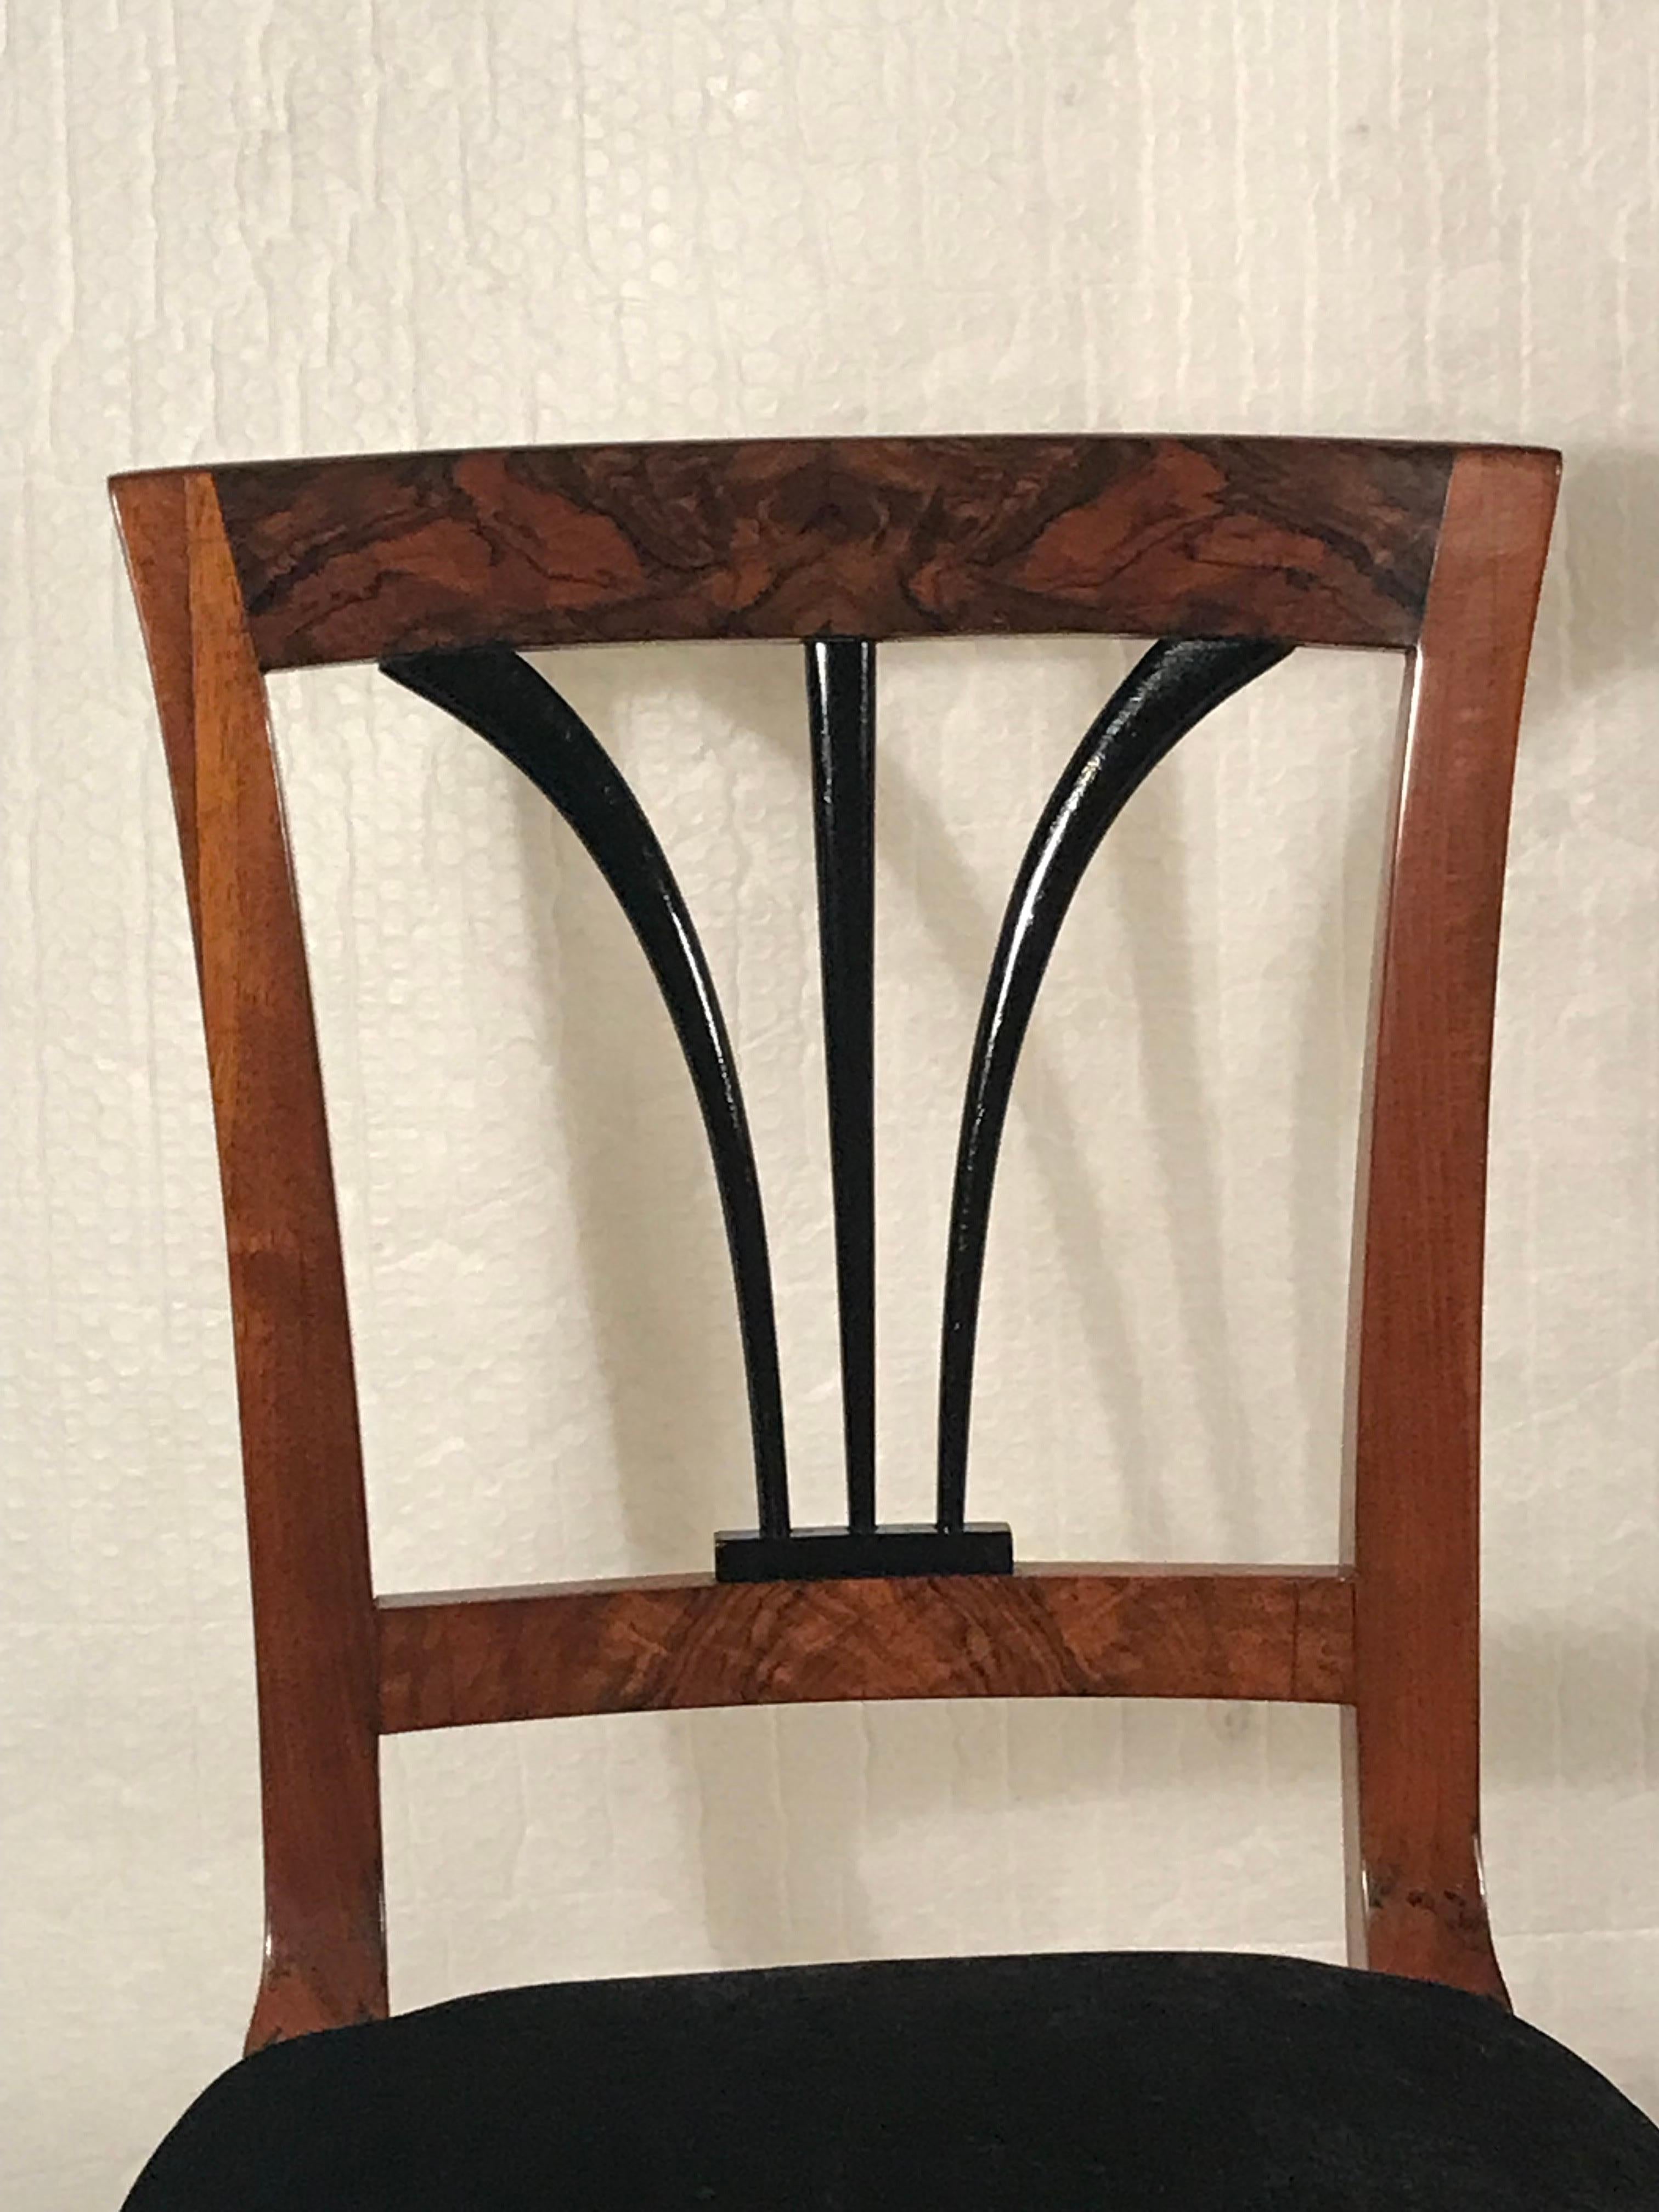 Découvrez un morceau d'histoire intemporel avec notre chaise Biedermeier classique provenant de l'Allemagne du Sud des années 1820. Fabriqué avec un magnifique placage de noyer, il présente un élégant dossier ébonisé.
Rénové de façon experte avec un